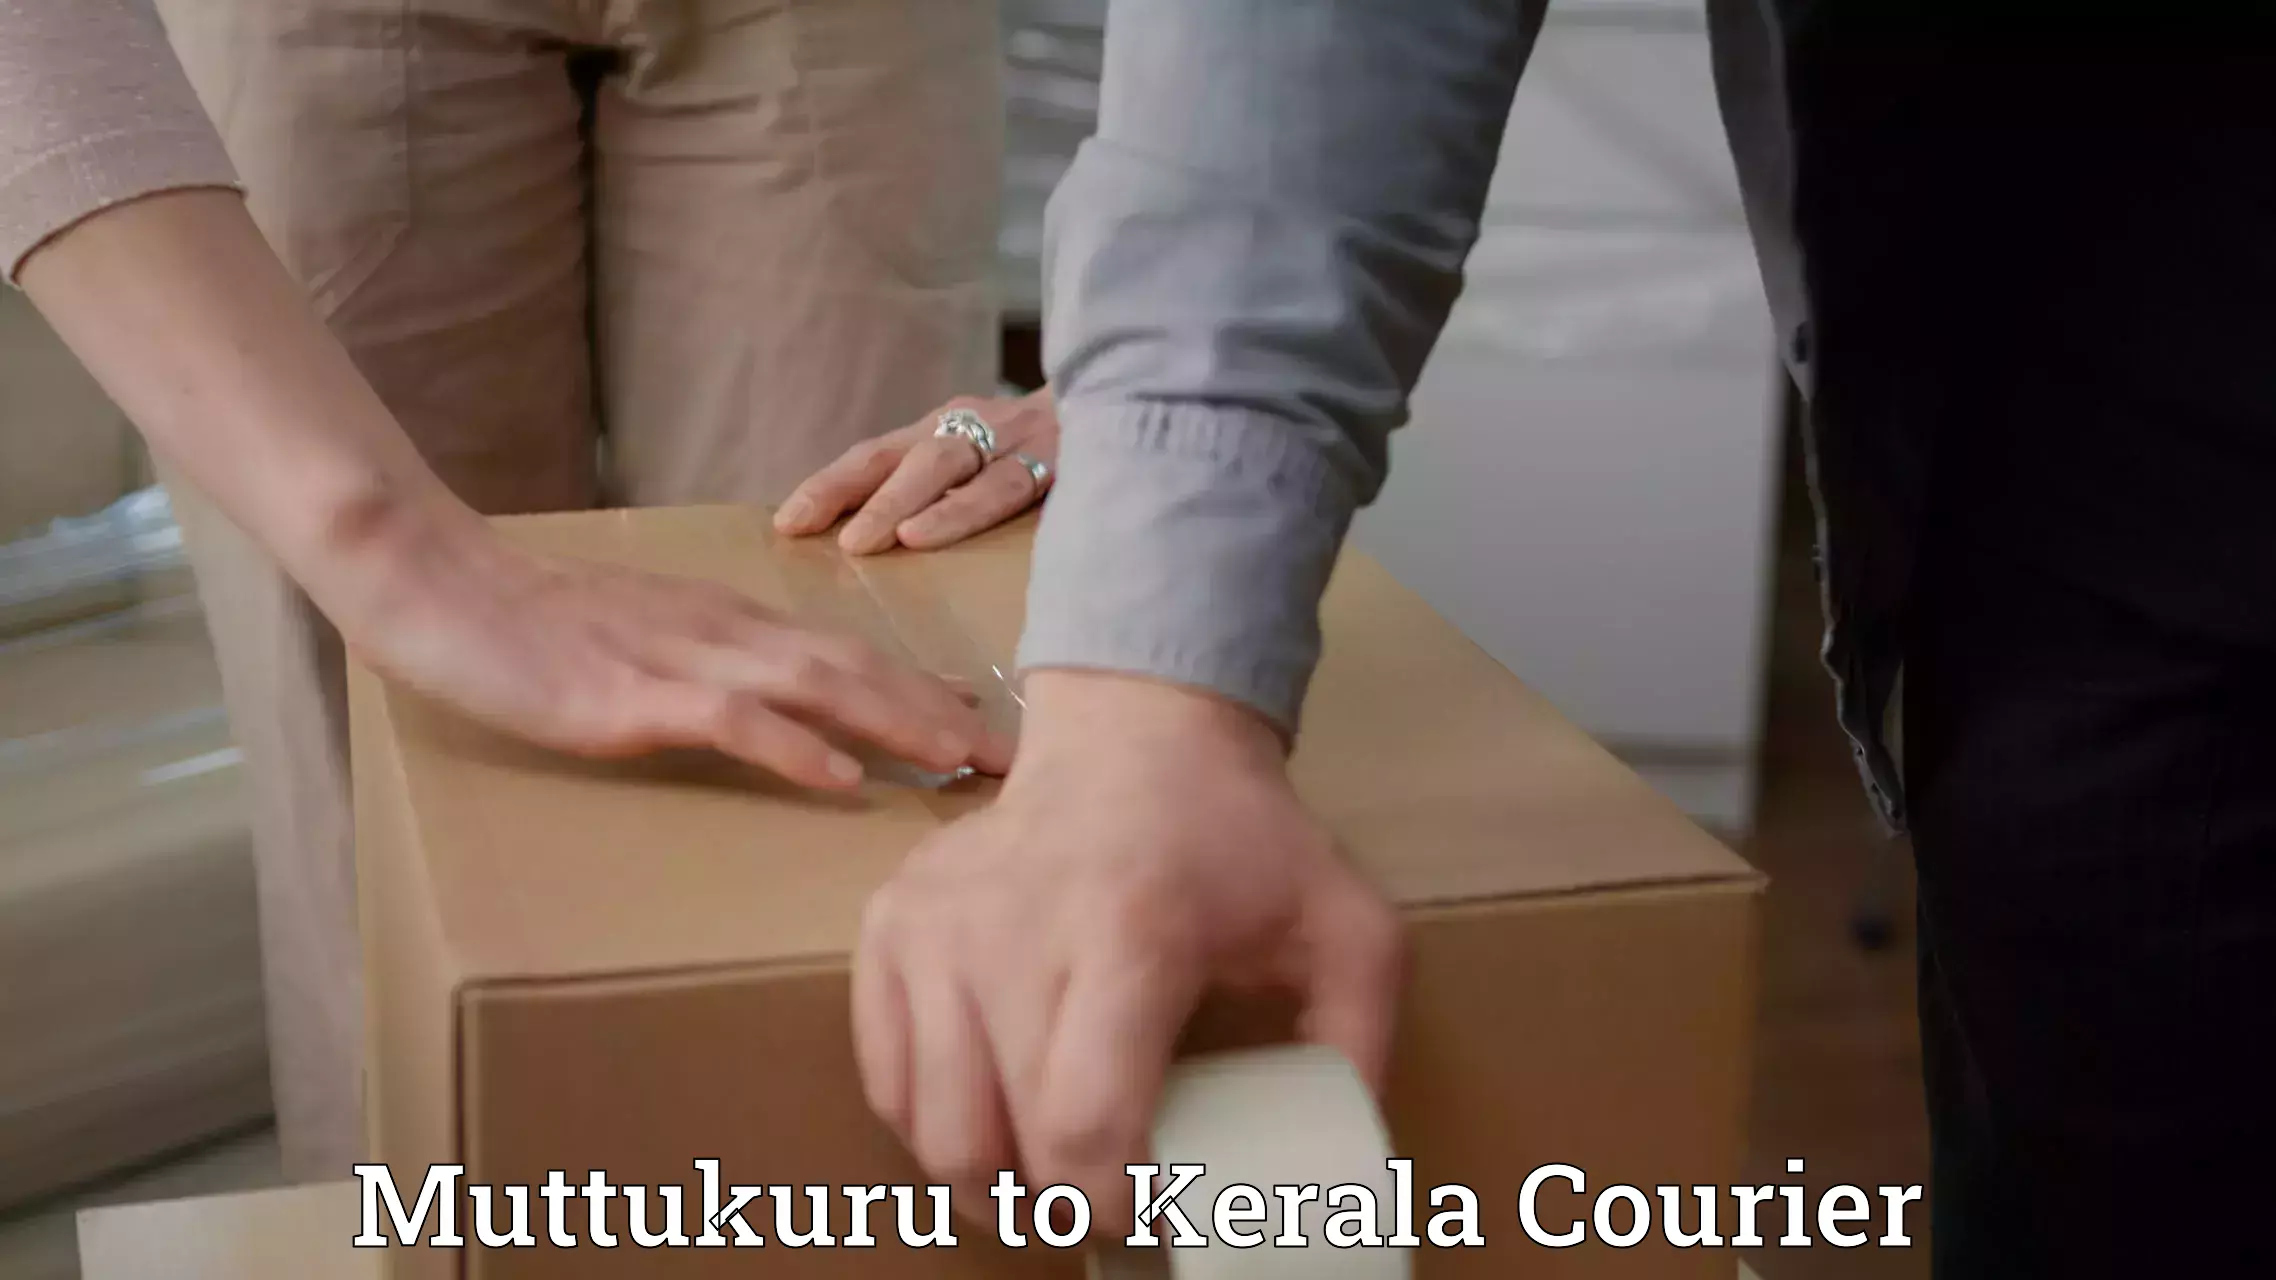 Urgent courier needs Muttukuru to Kerala University Thiruvananthapuram